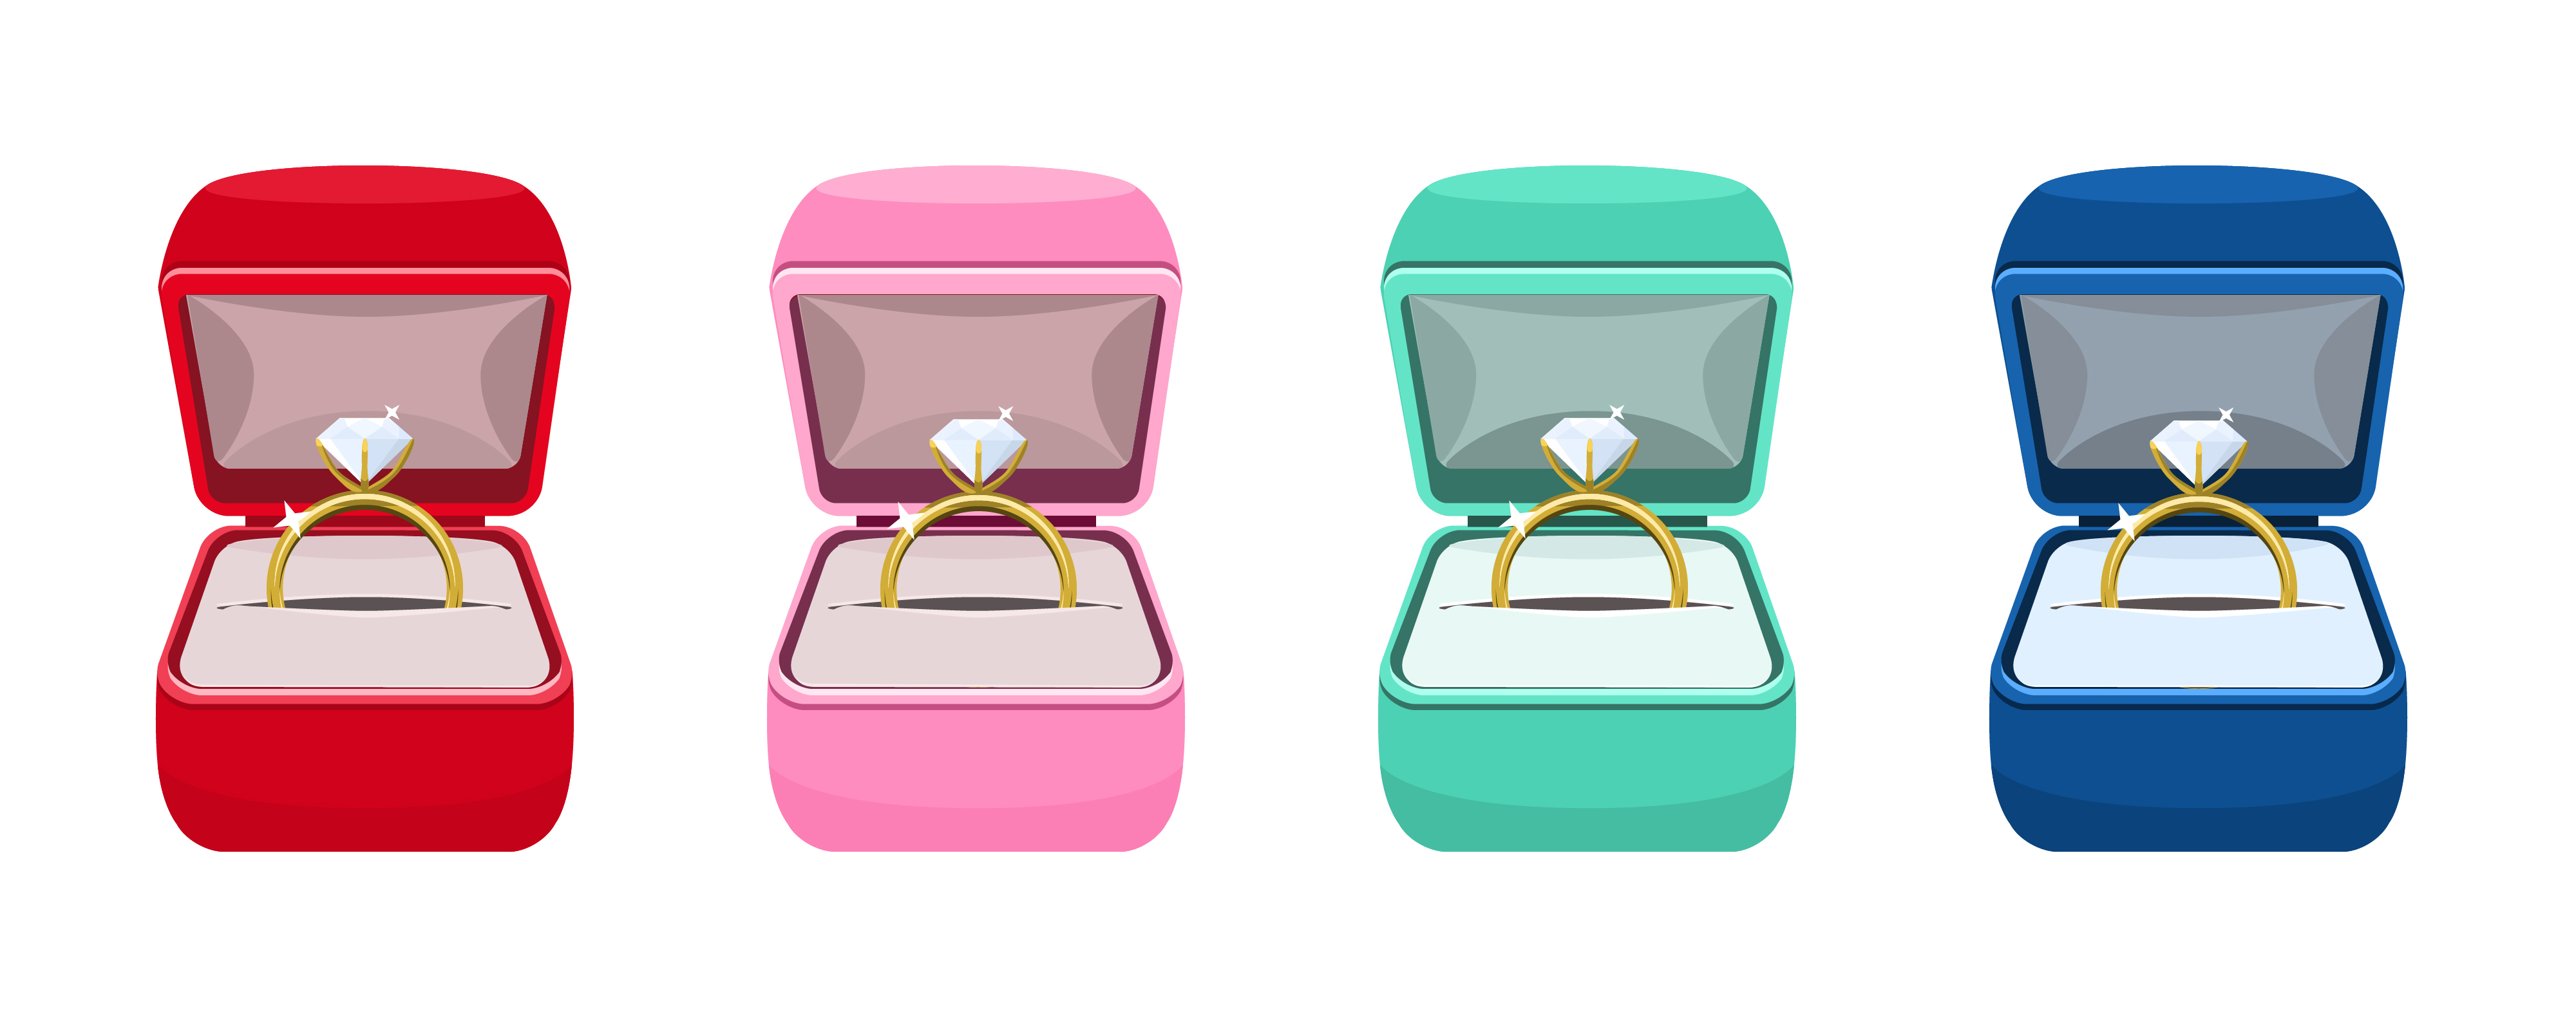 Cuatro anillos de matrimonio en cajas de distintos colores